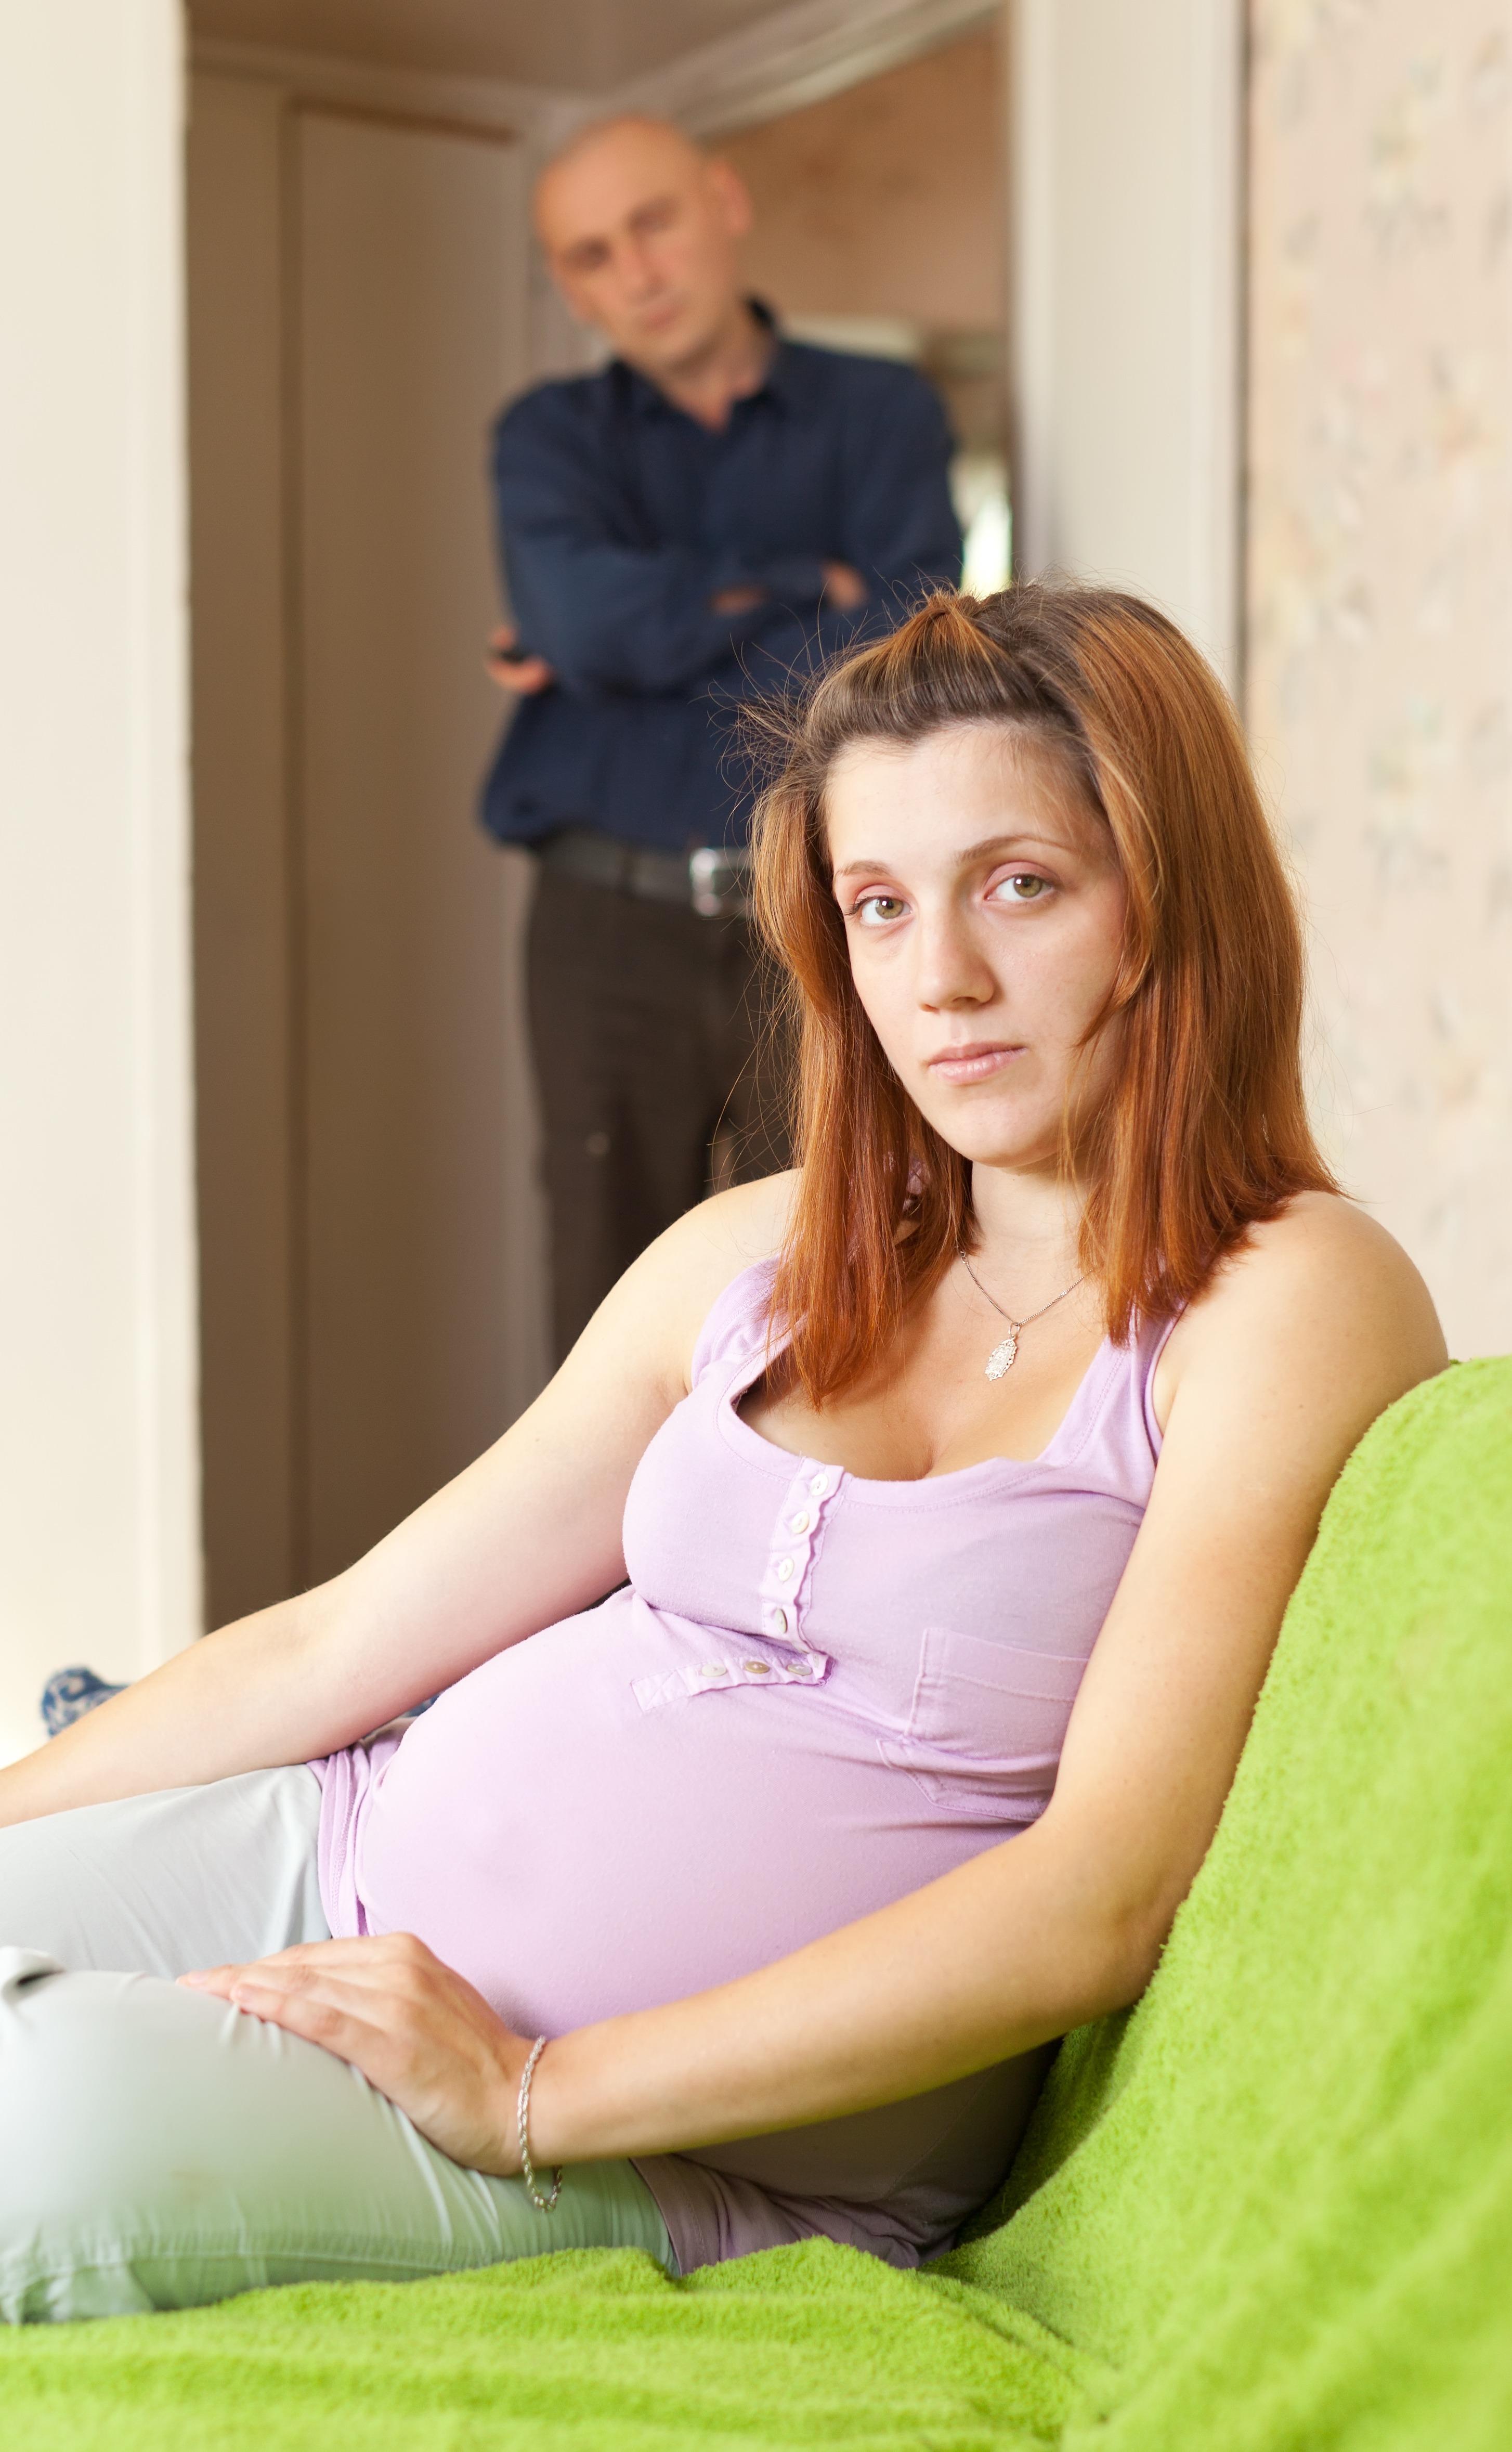 Mujer embarazada con un hombre de pie detrás de ella | Fuente: Shutterstock